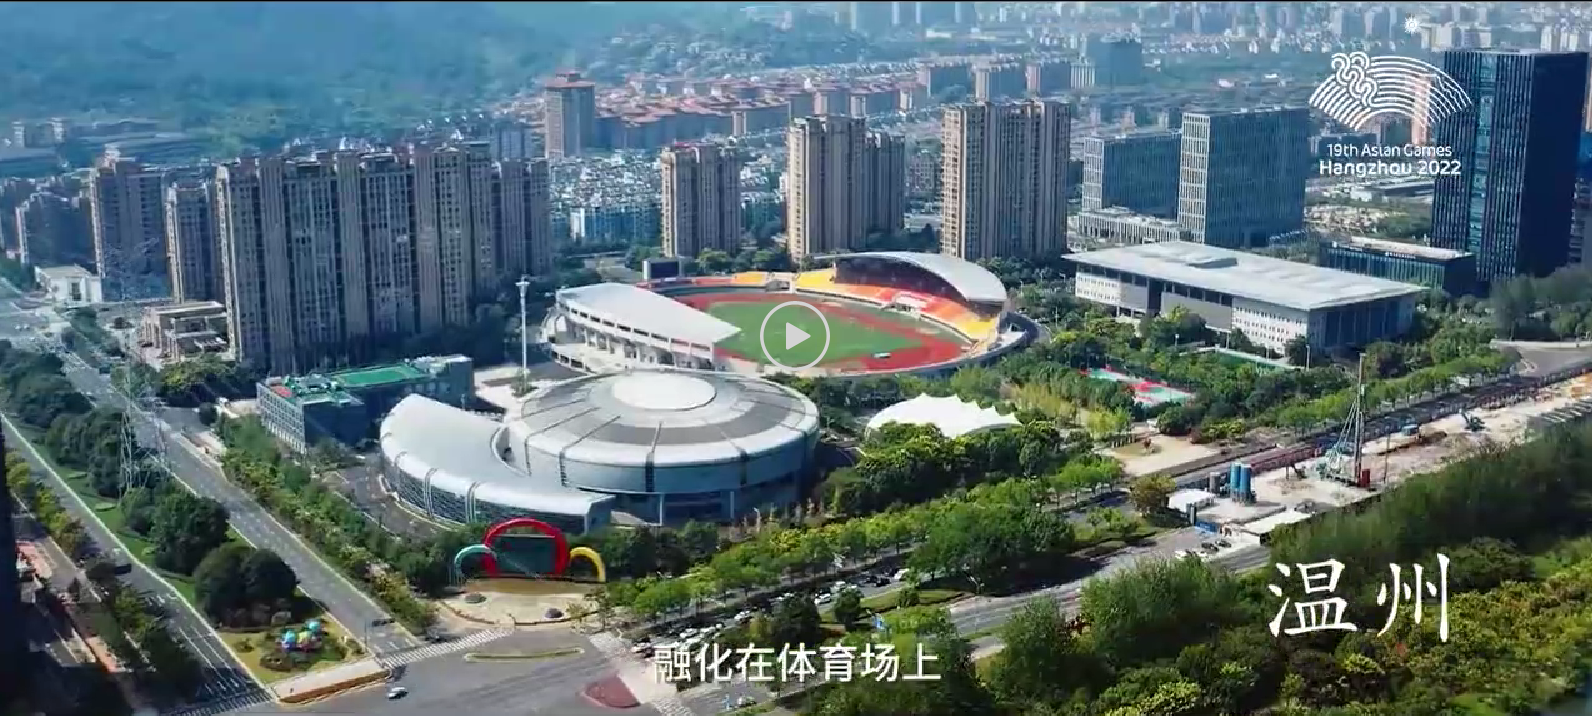 杭州亚运会倒计时一周年 | 宣传片《亚运+1》